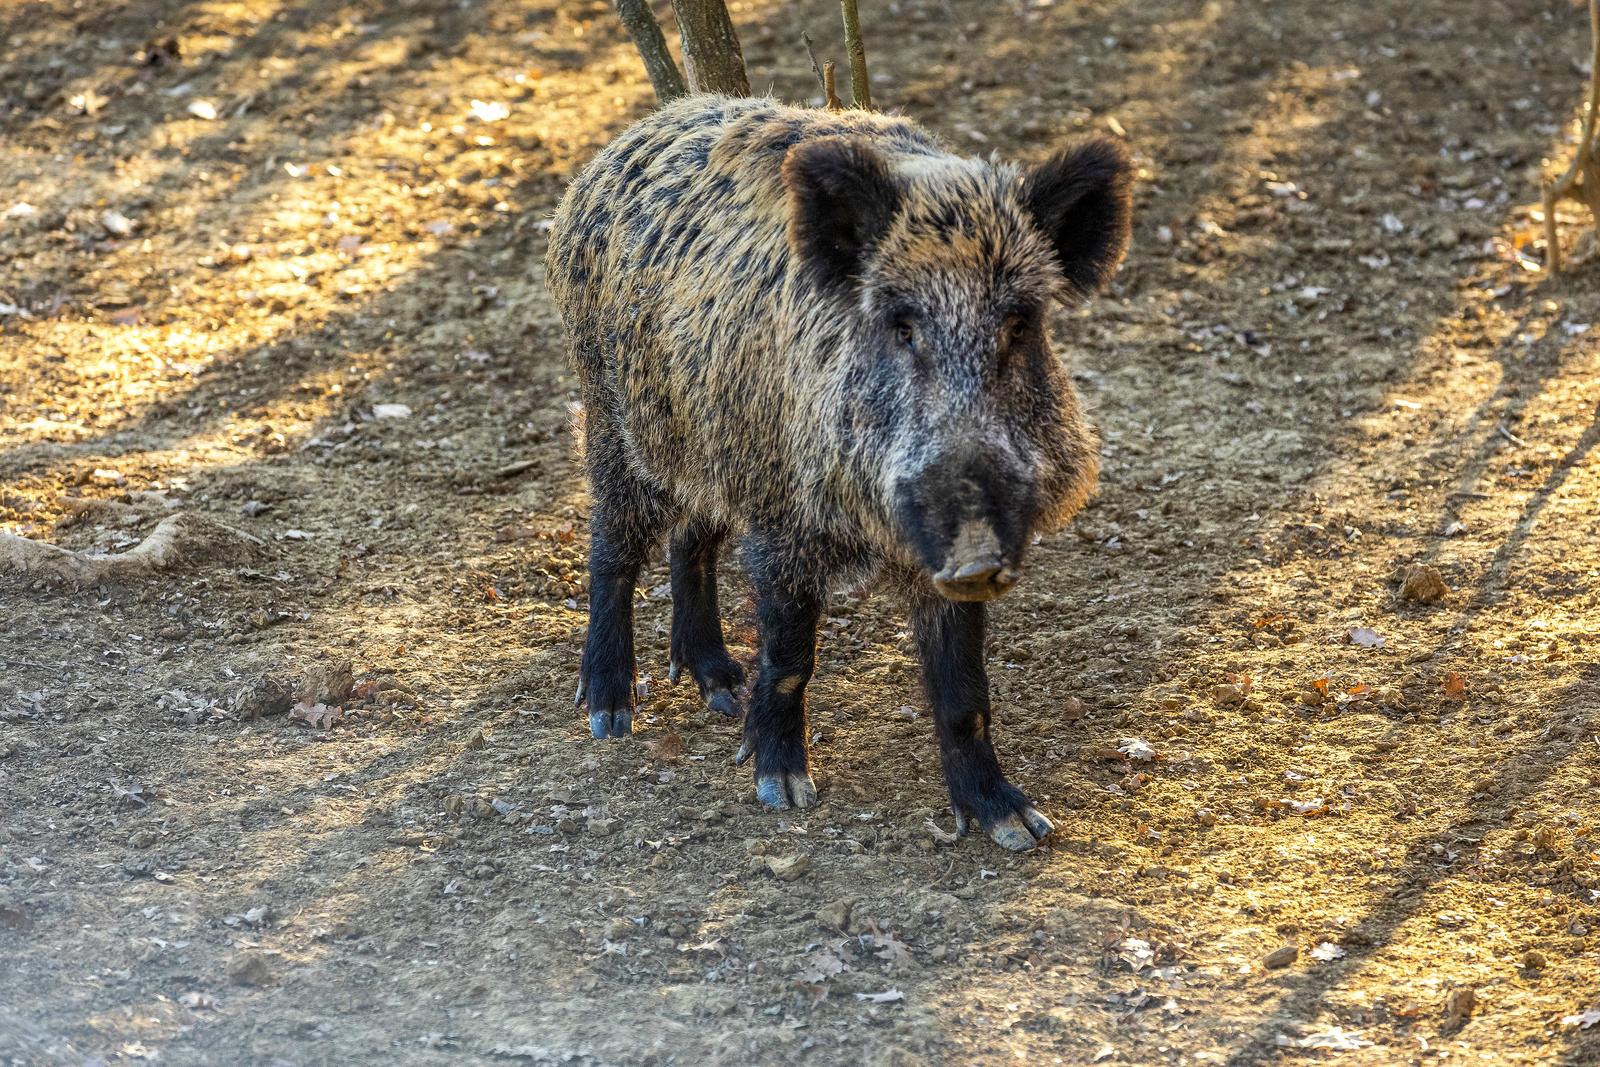 08.02.2022.., Buzet-
Divlje svinje u potrazi za hranom u sumi. Photo: Srecko Niketic/PIXSELL